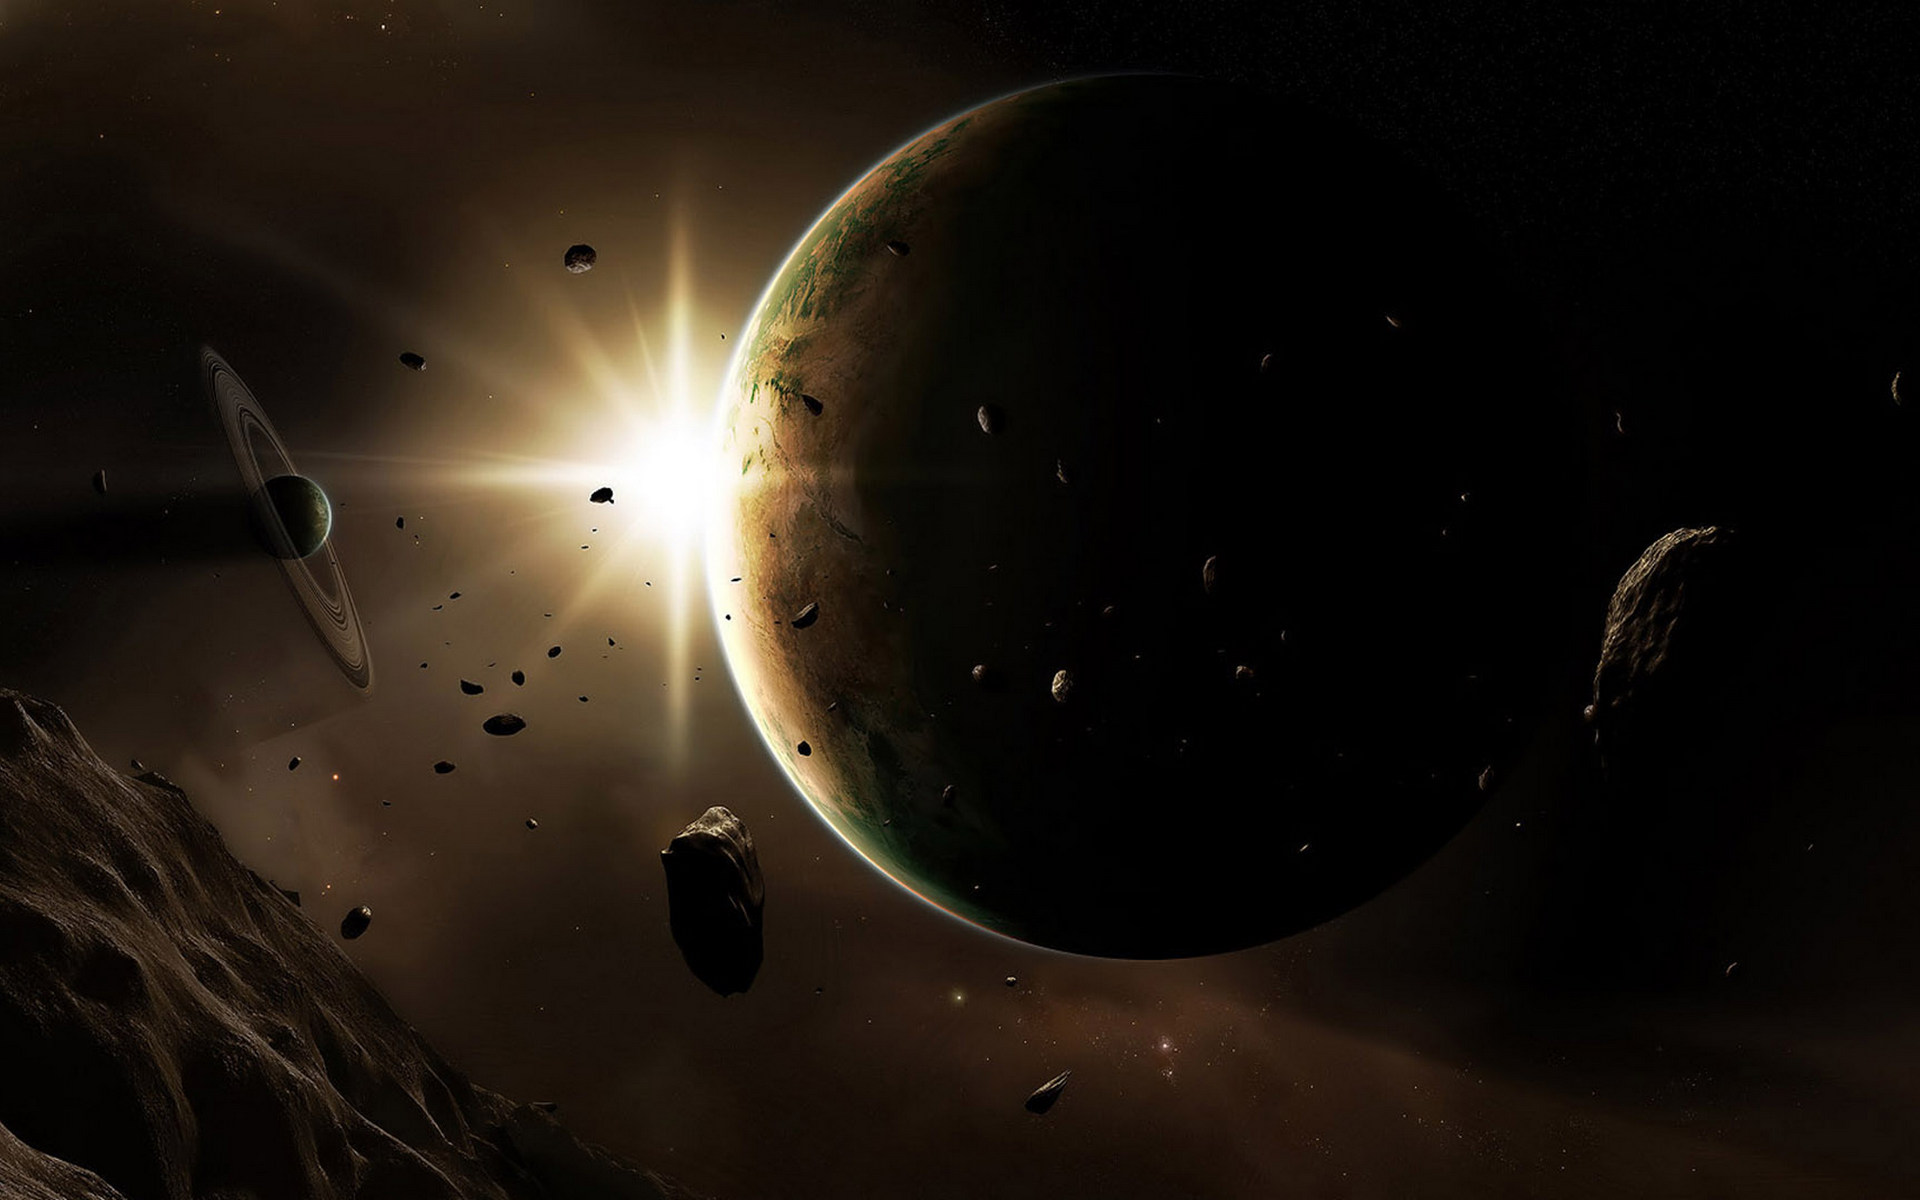 Обои солнечное затмение планета картинки на рабочий стол на тему Космос - скачать бесплатно